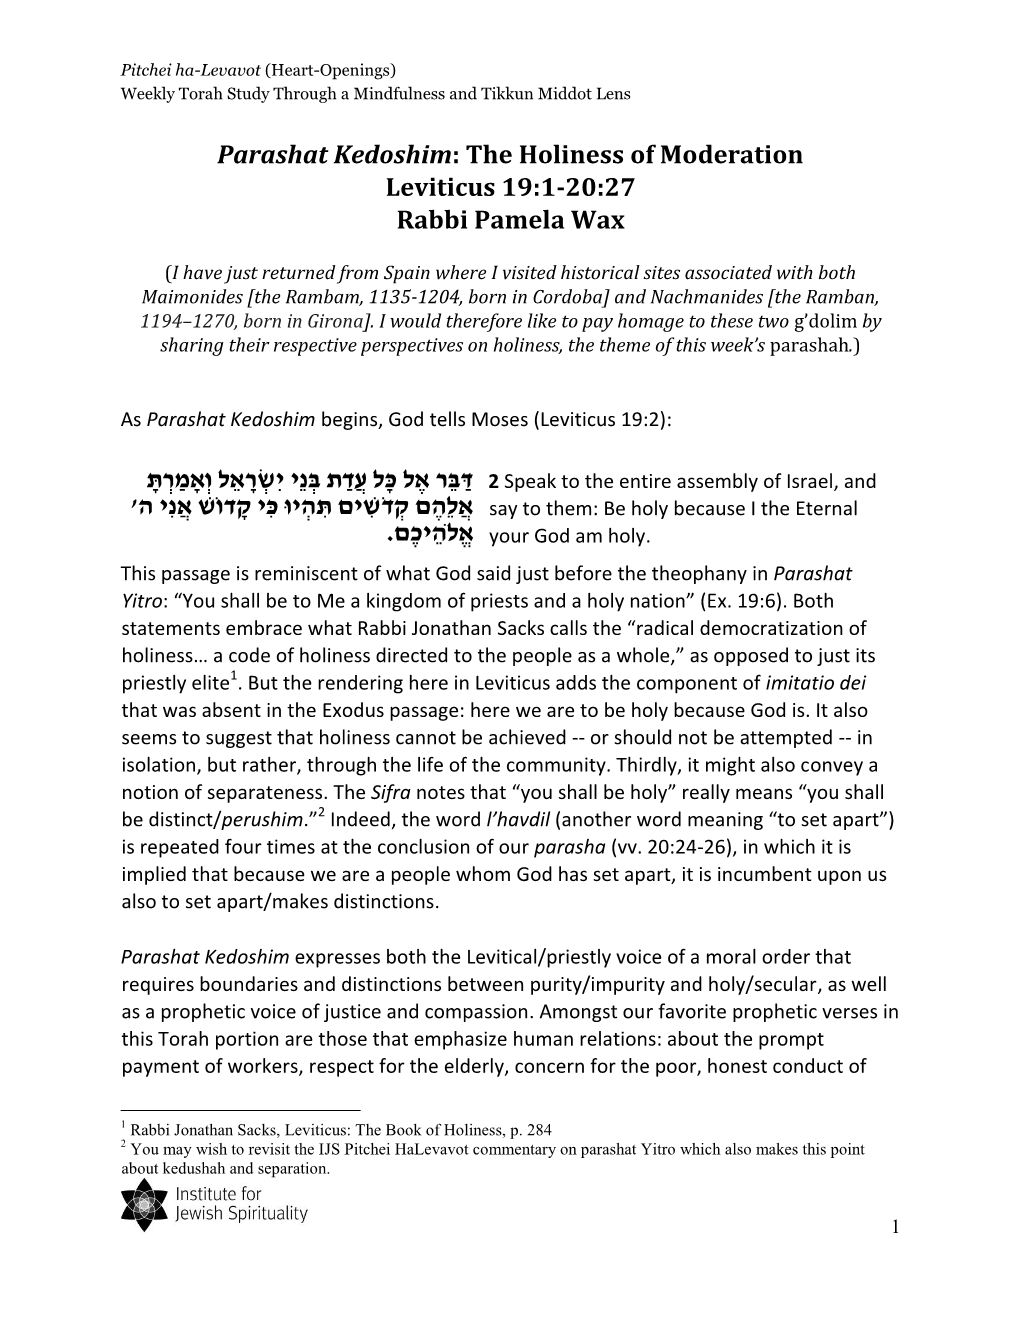 Parashat Kedoshim: the Holiness of Moderation Leviticus 19:1-20:27 Rabbi Pamela Wax